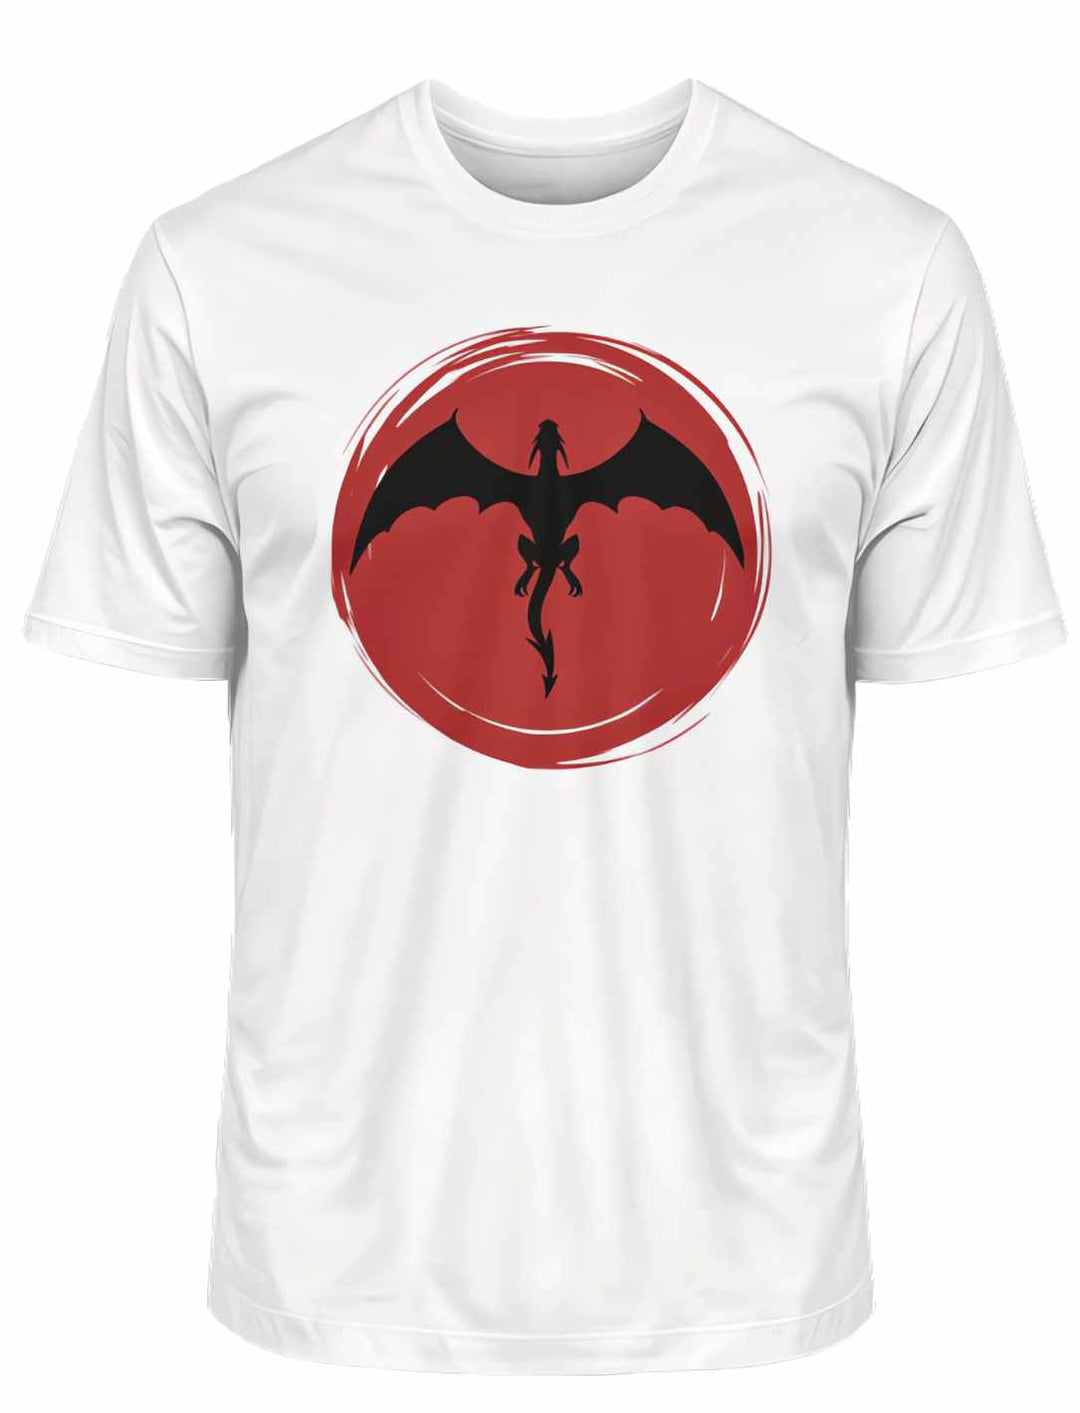 Weißes 'Saga of the Dragon' Organic Unisex T-Shirt liegend auf weißem Untergrund, das elegante Drachen-Motiv zeigend.